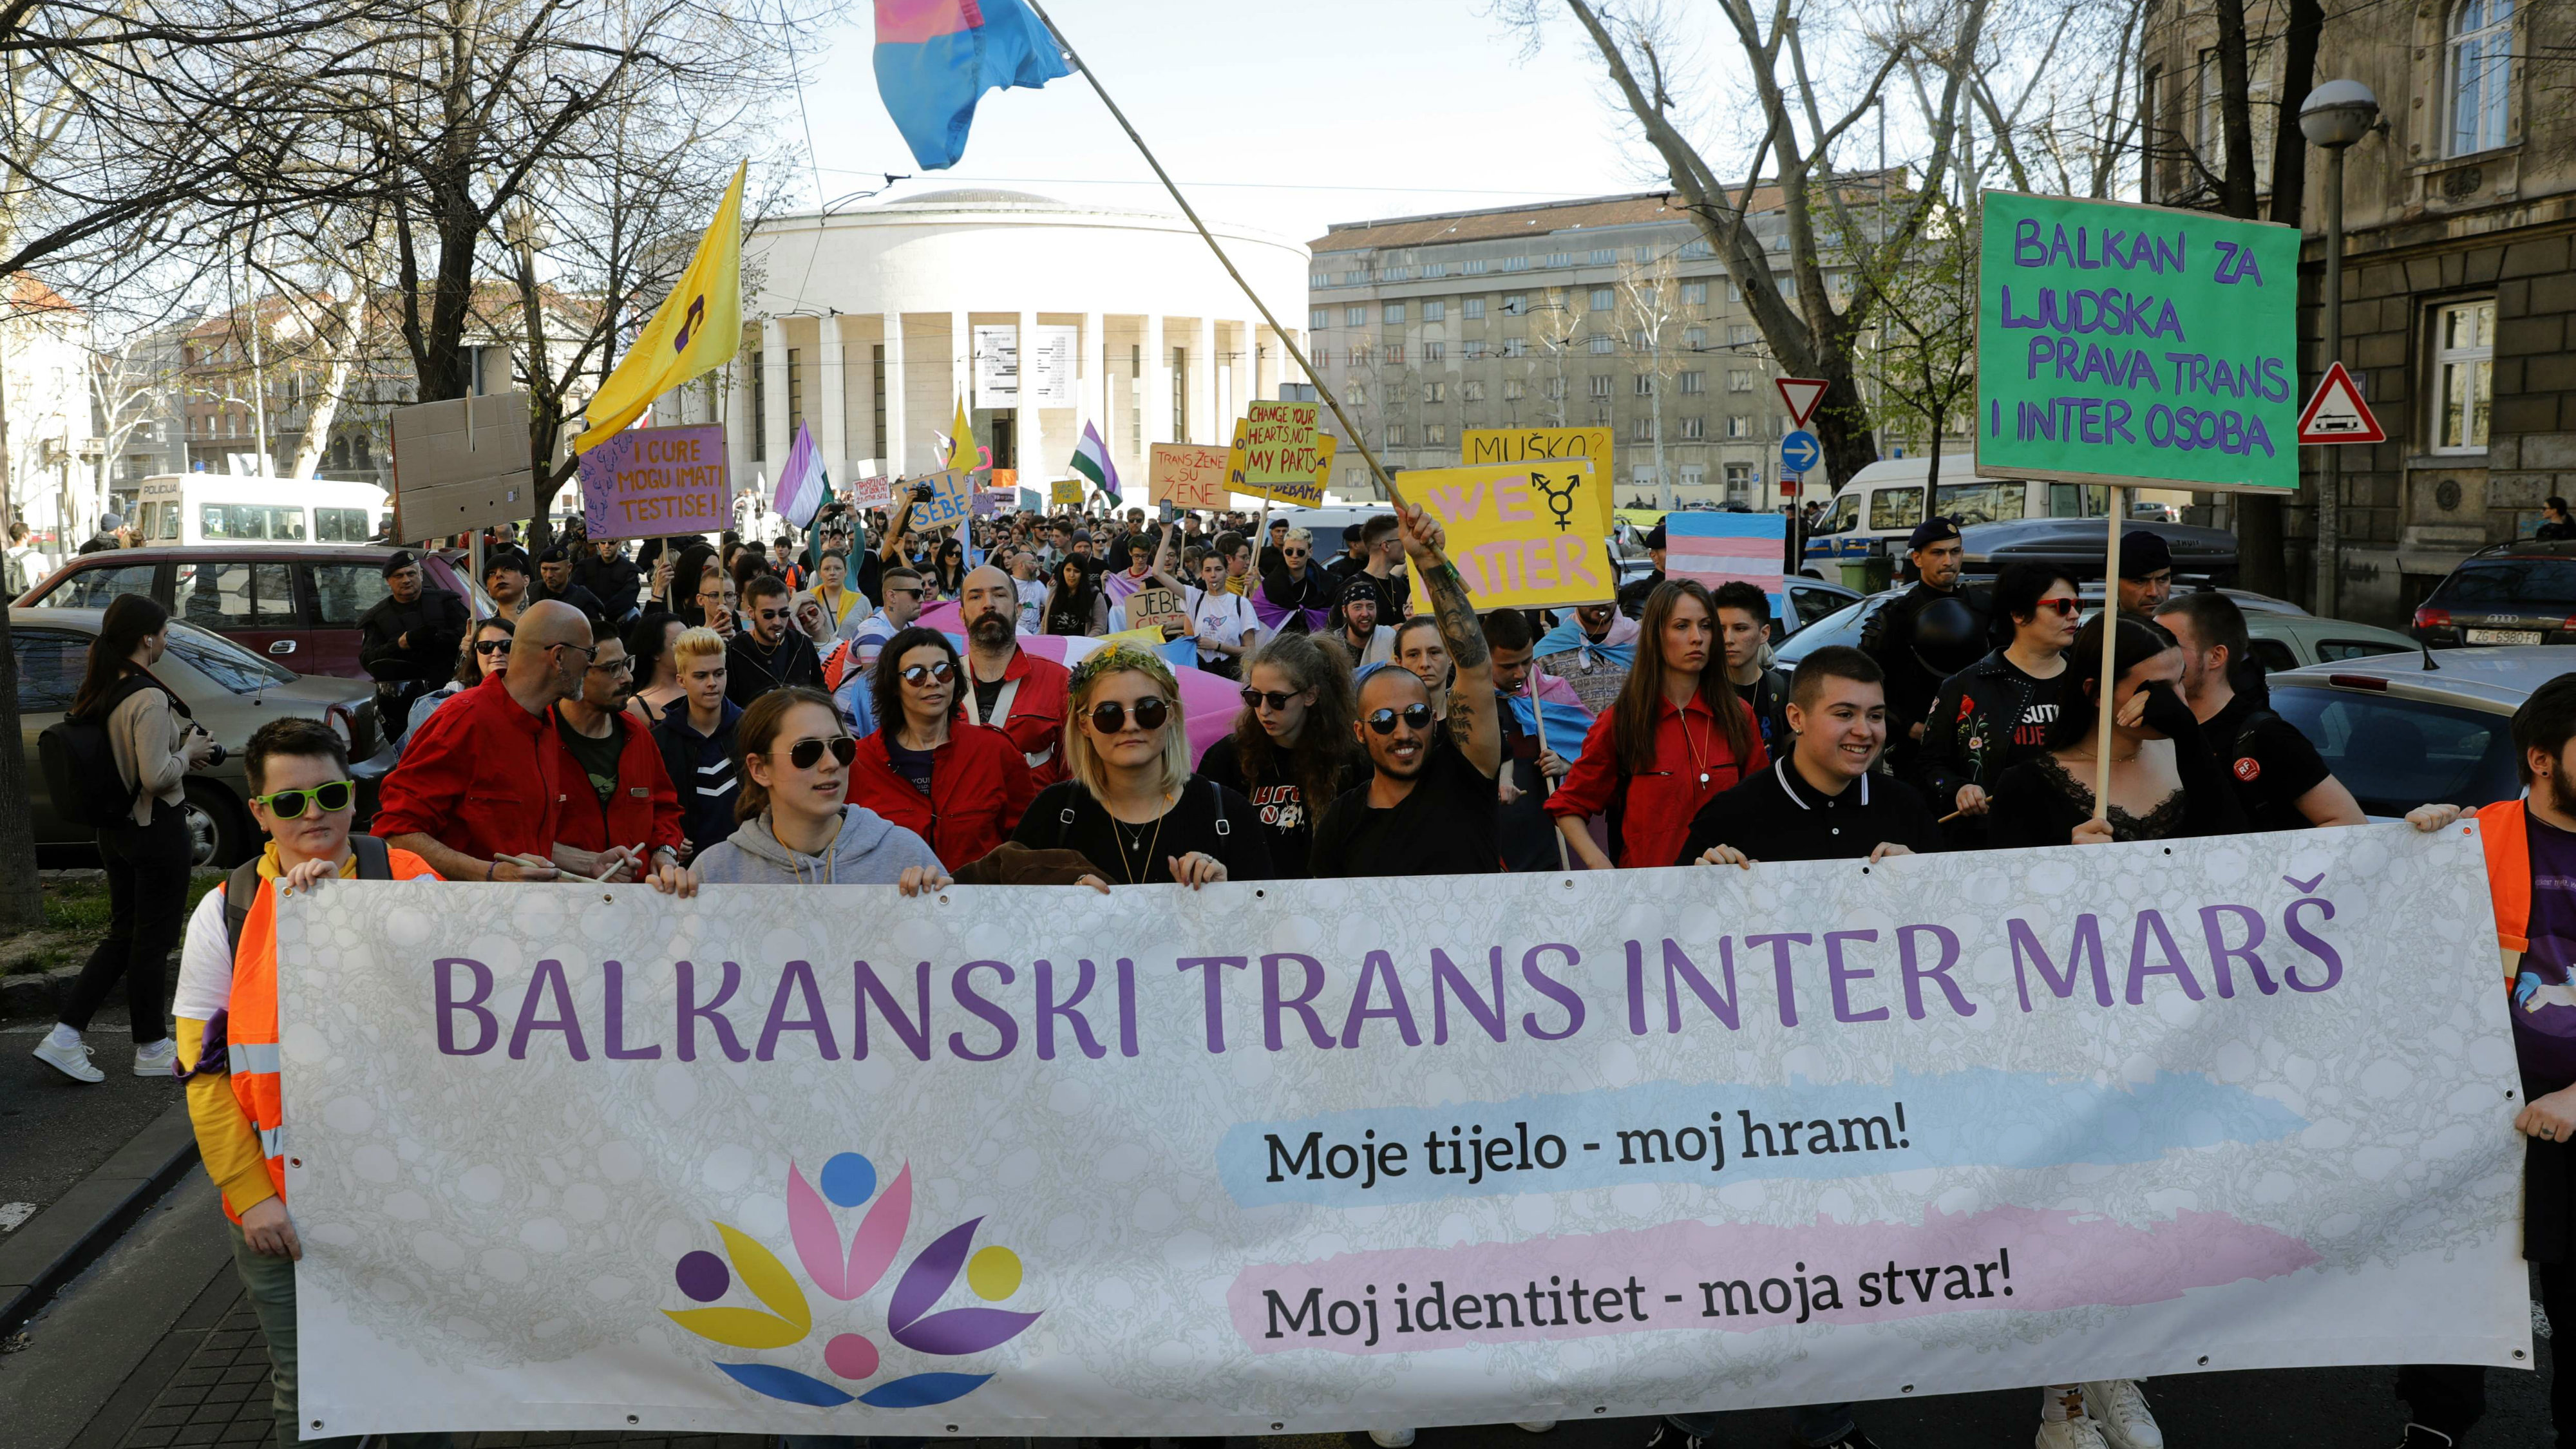 U Zagrebu održan prvi balkanski trans inter marš 2